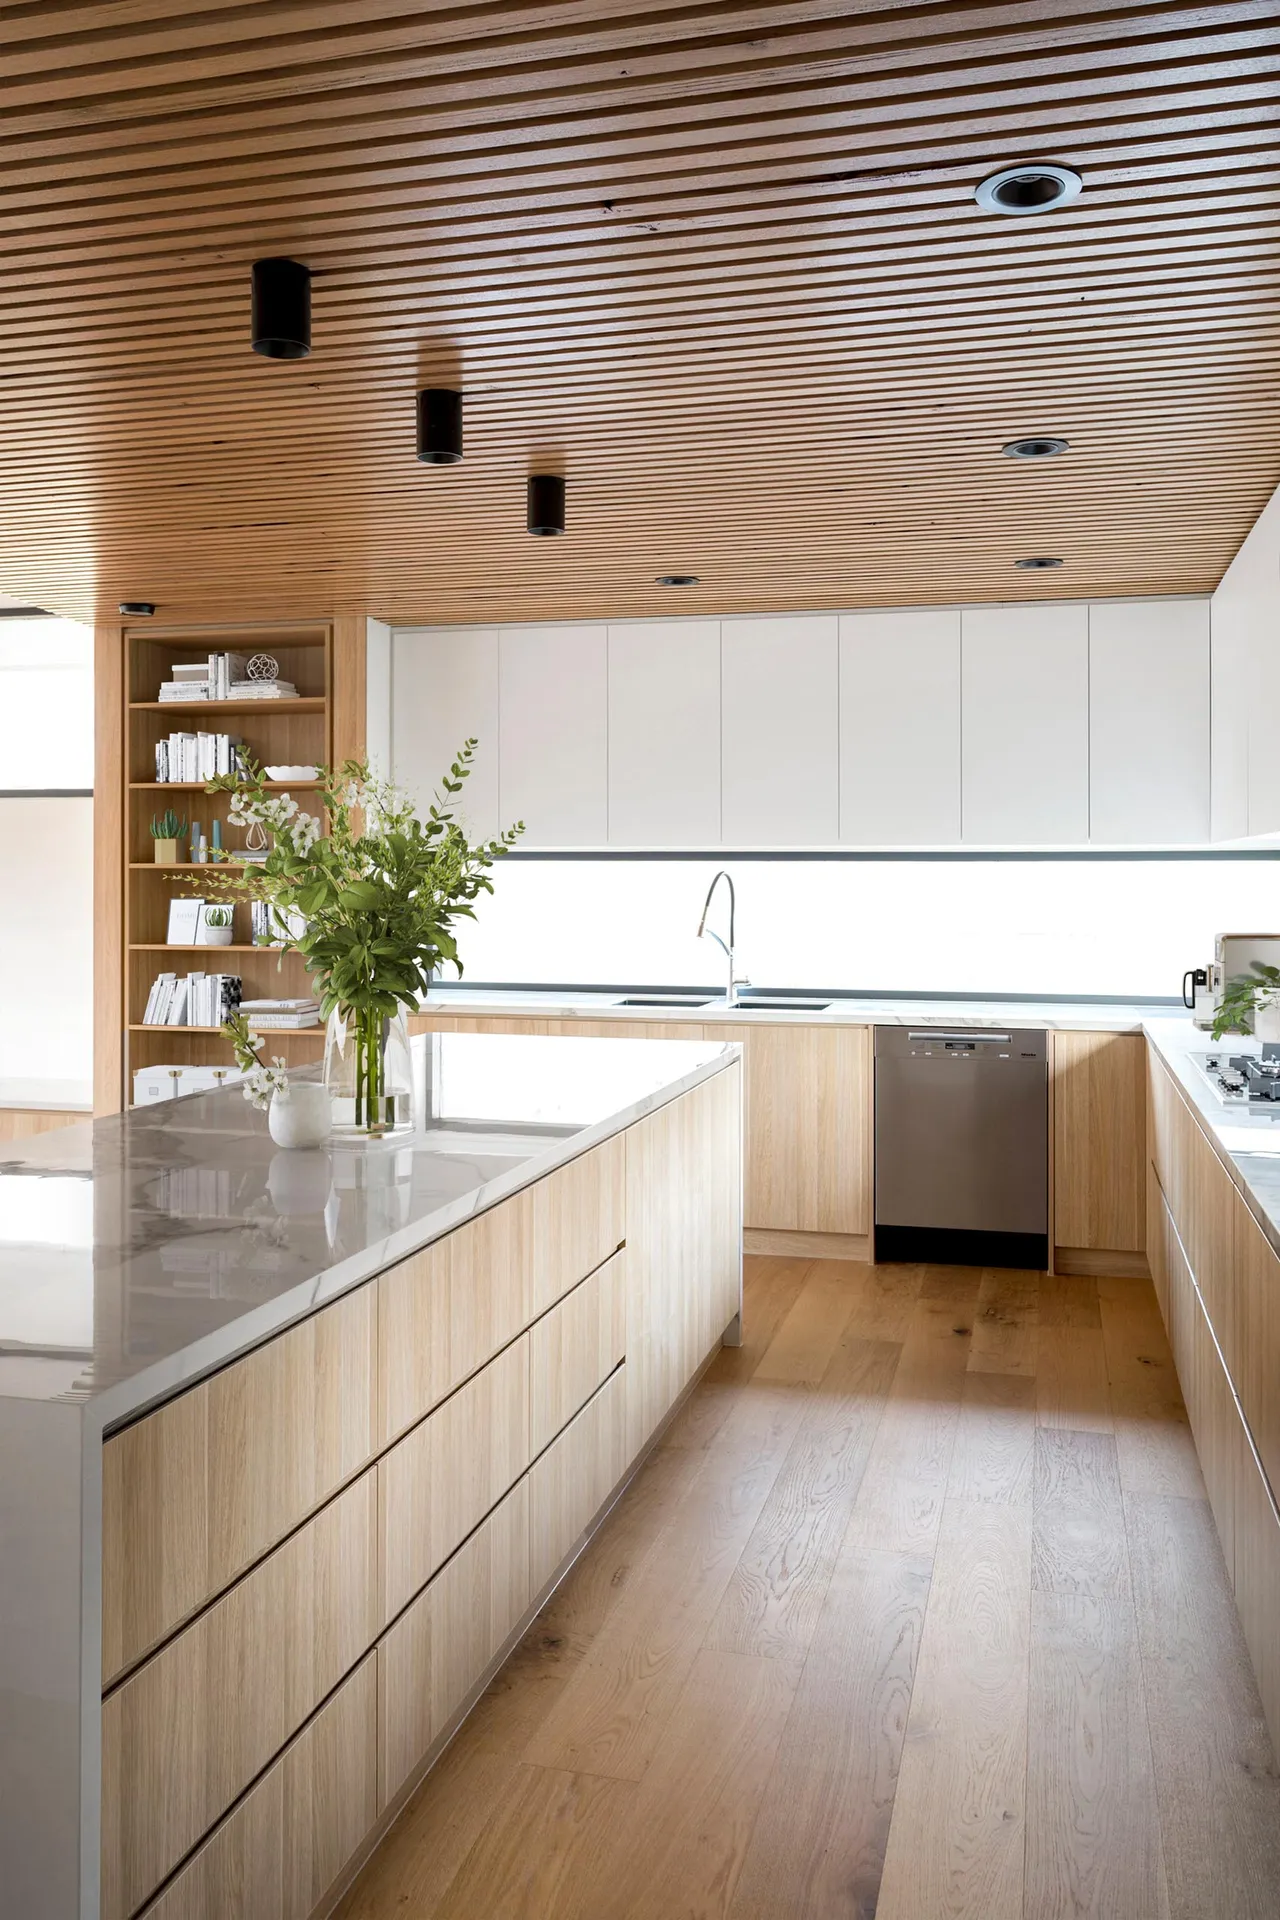 Trần gỗ với tông màu nâu gỗ tự nhiên mang đến nét gần gũi cho khu vực nhà bếp